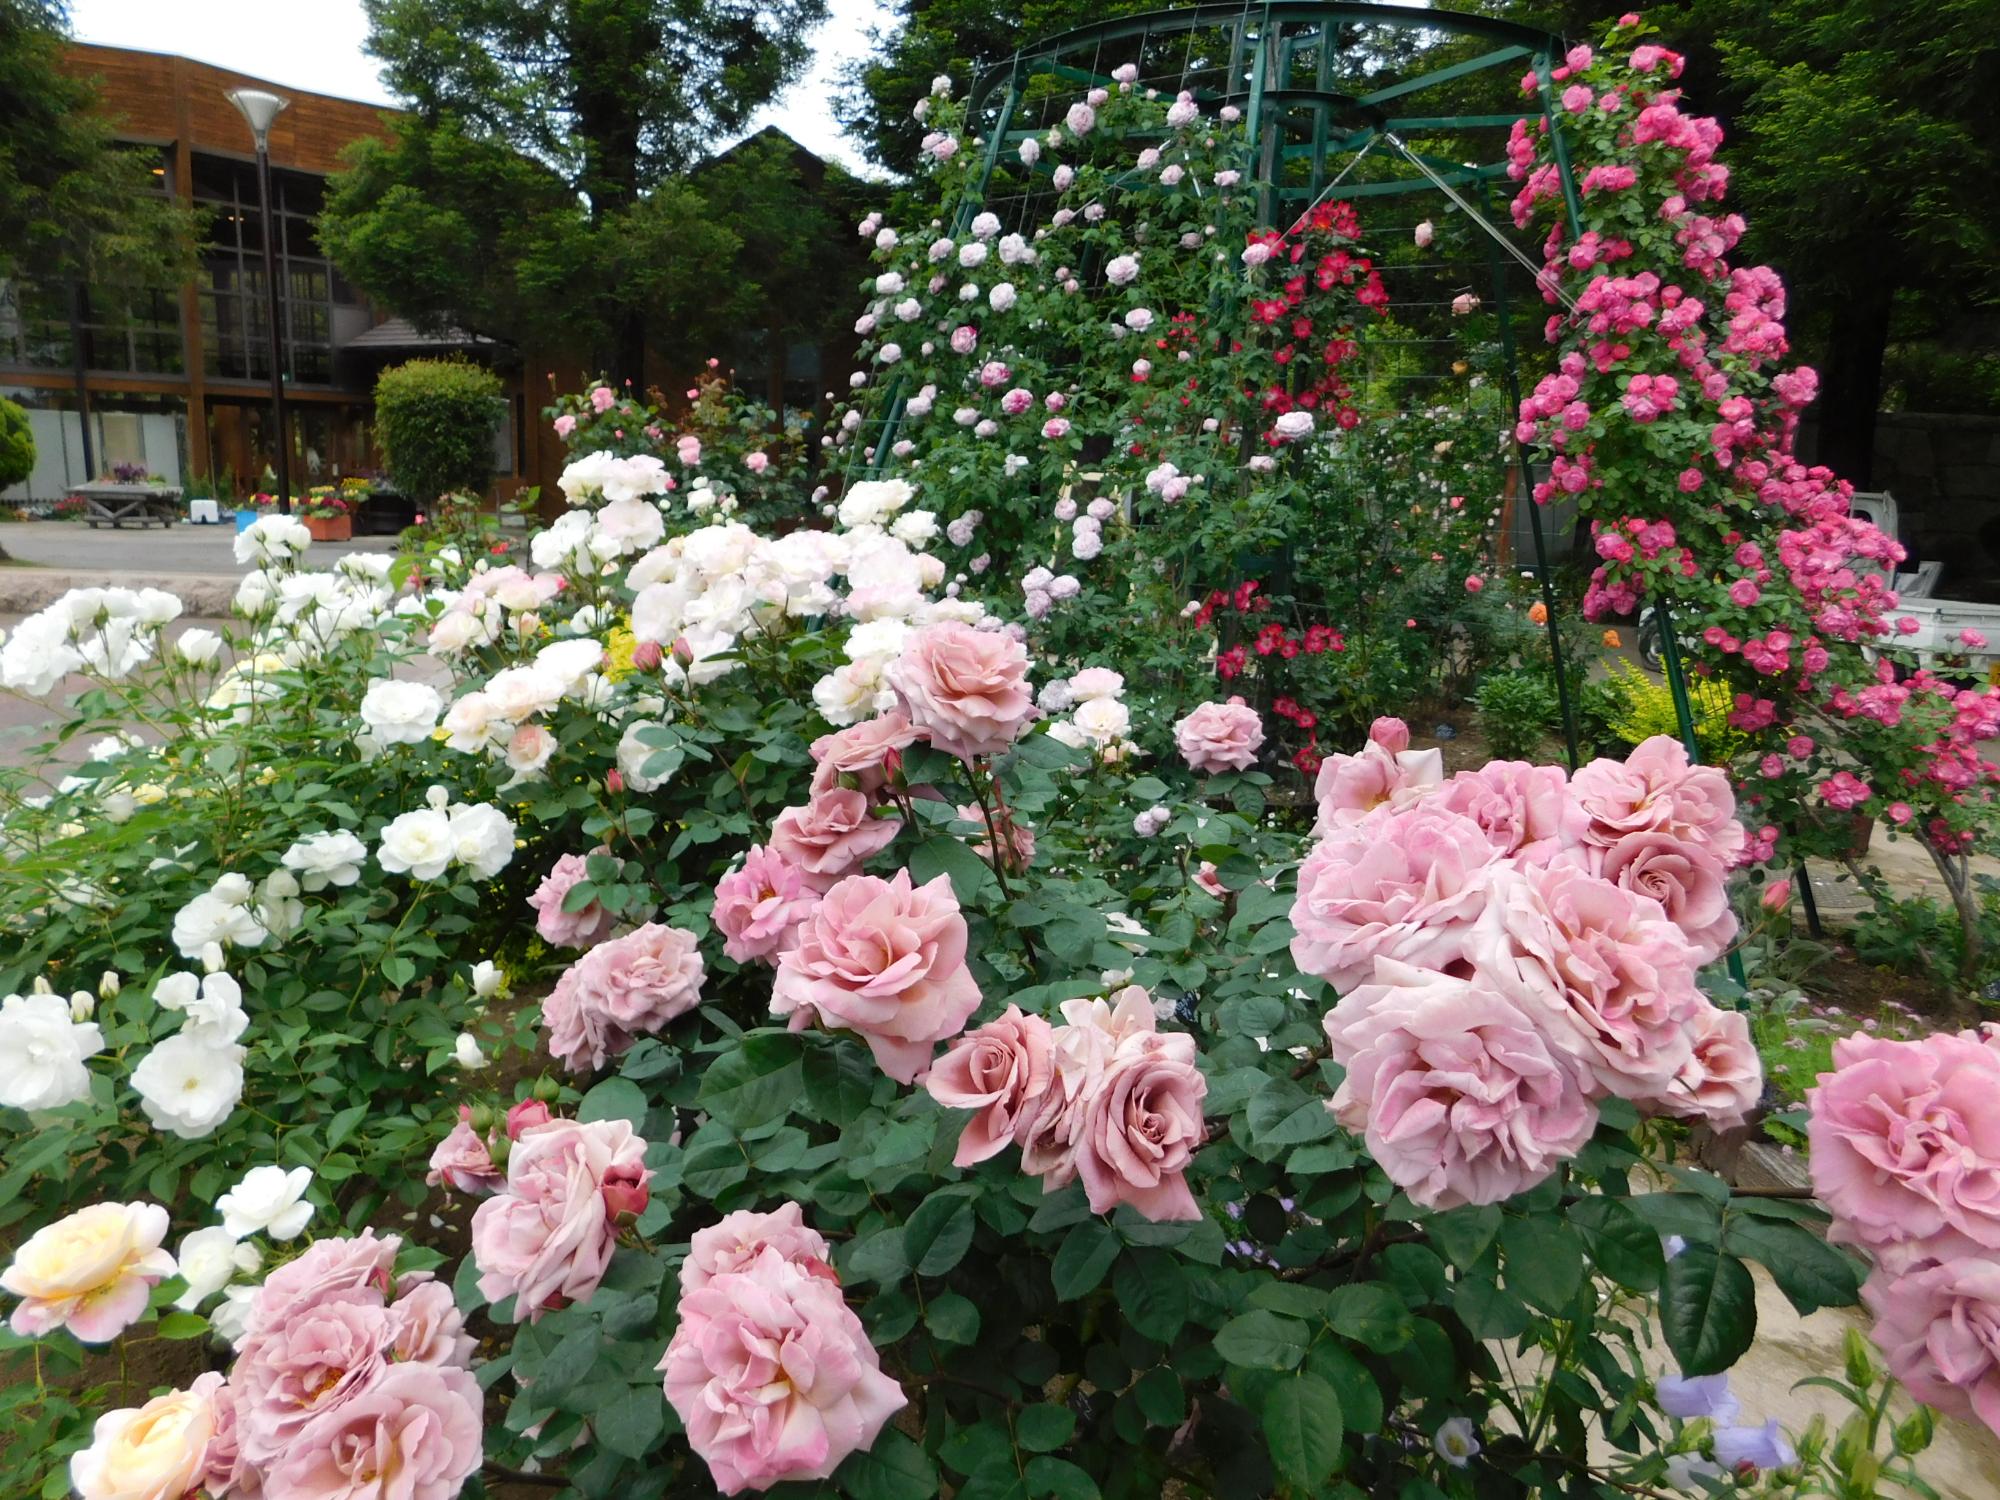 このはな館周辺では、バラの花が見頃になって大変きれいです。昨年よりバラの花も大幅に増えました。写真は南側のバラ園です。